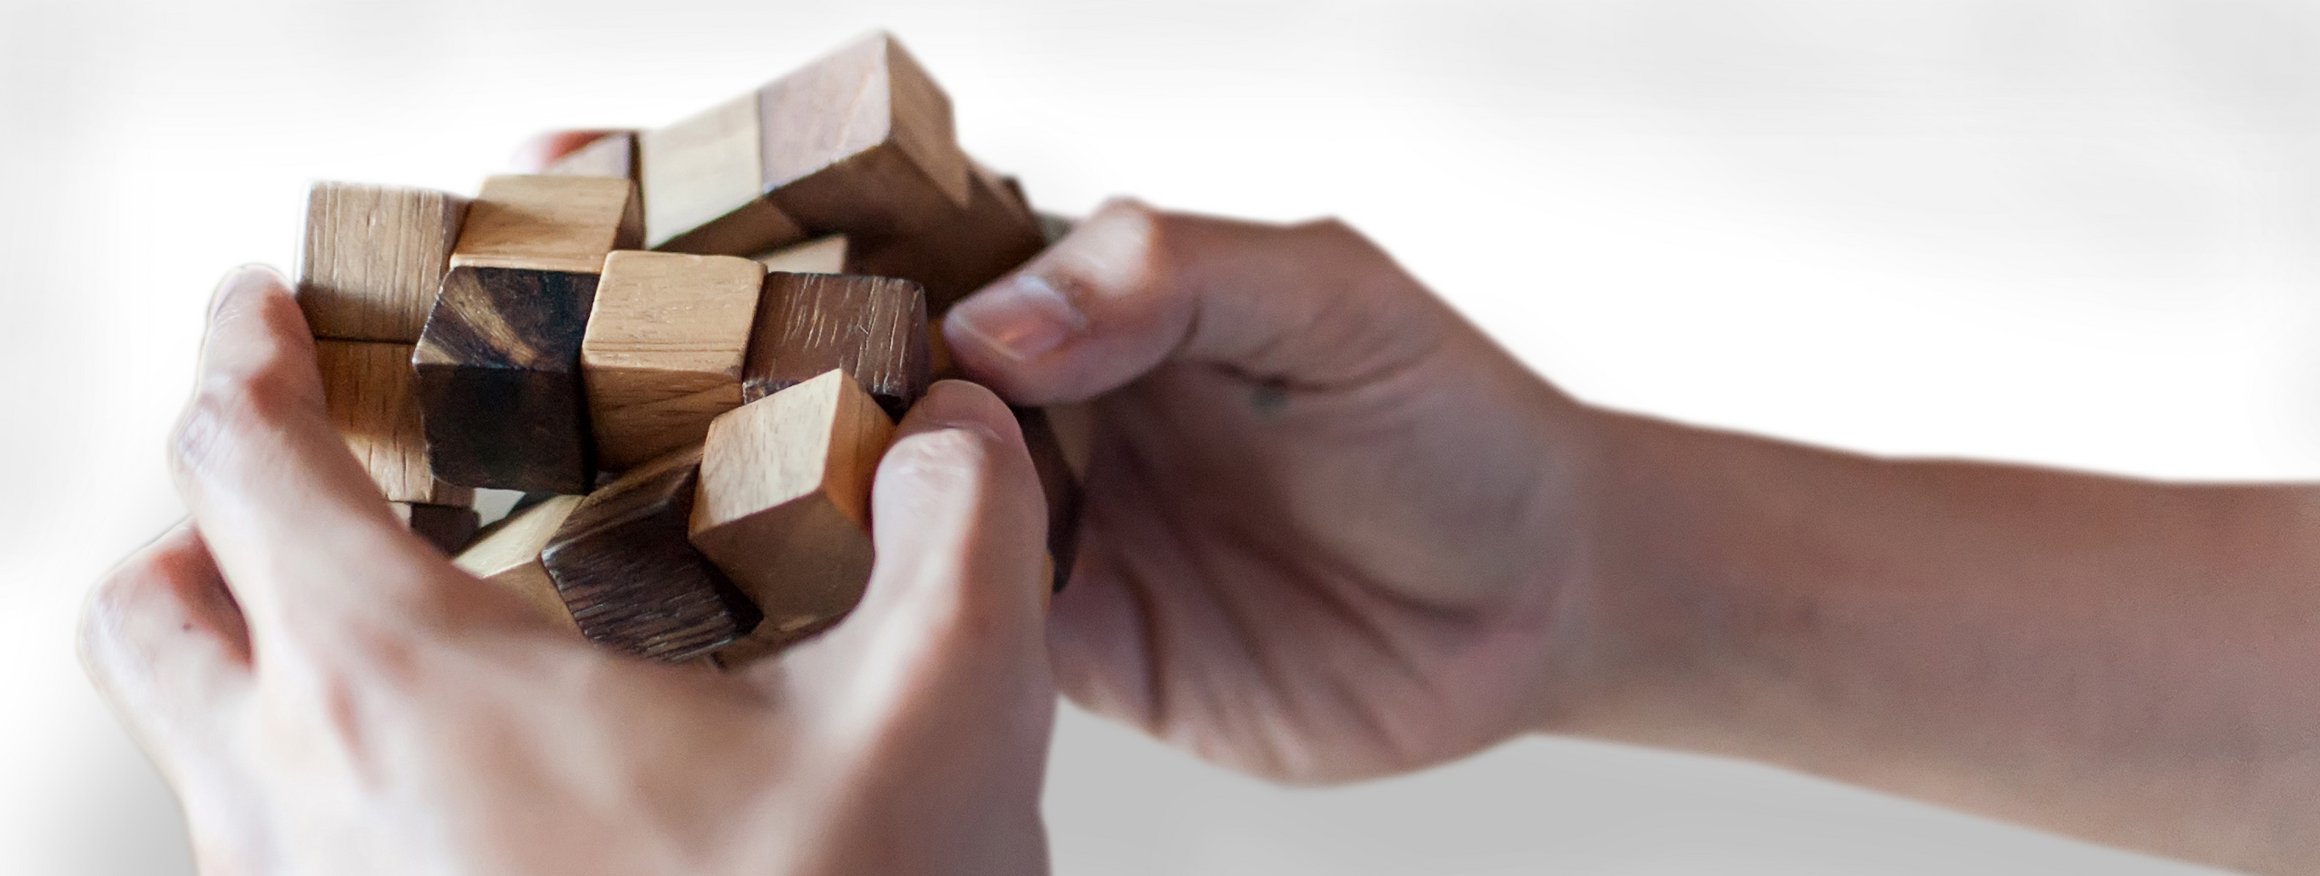 Zwei Hände halten einen Holzzauberwürfel und lösen das Spiel auf schnelle Weise